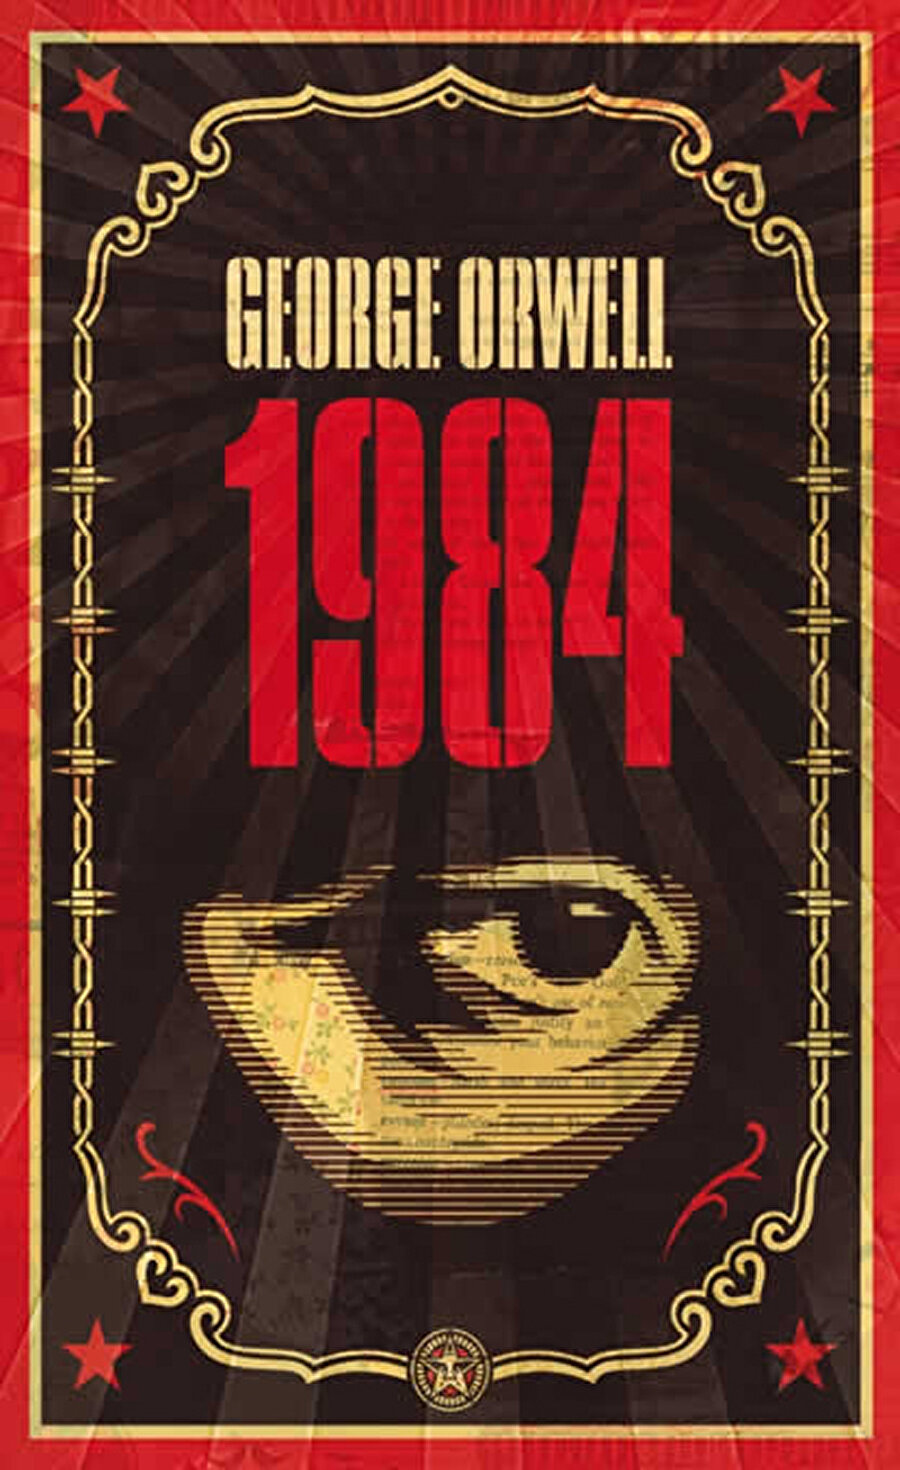 1984-George Orwell

                                    
                                